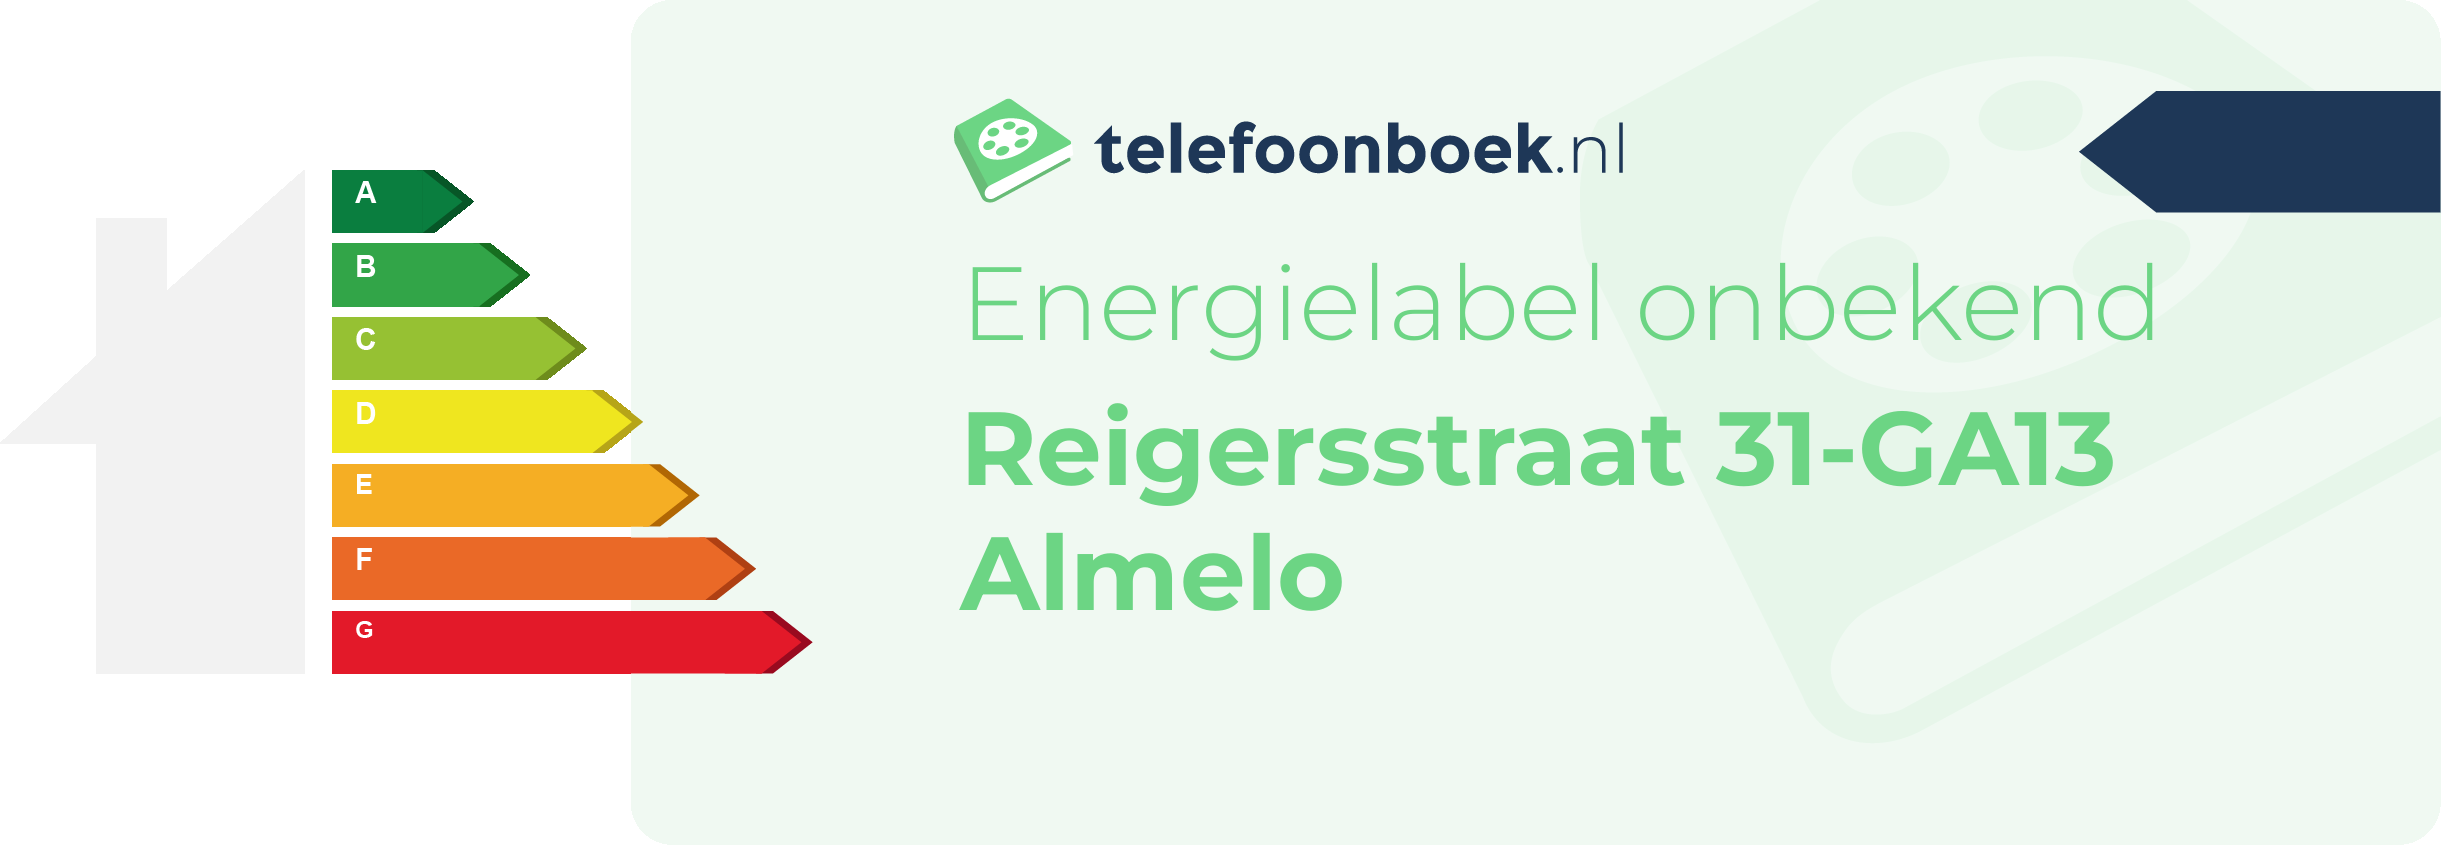 Energielabel Reigersstraat 31-GA13 Almelo